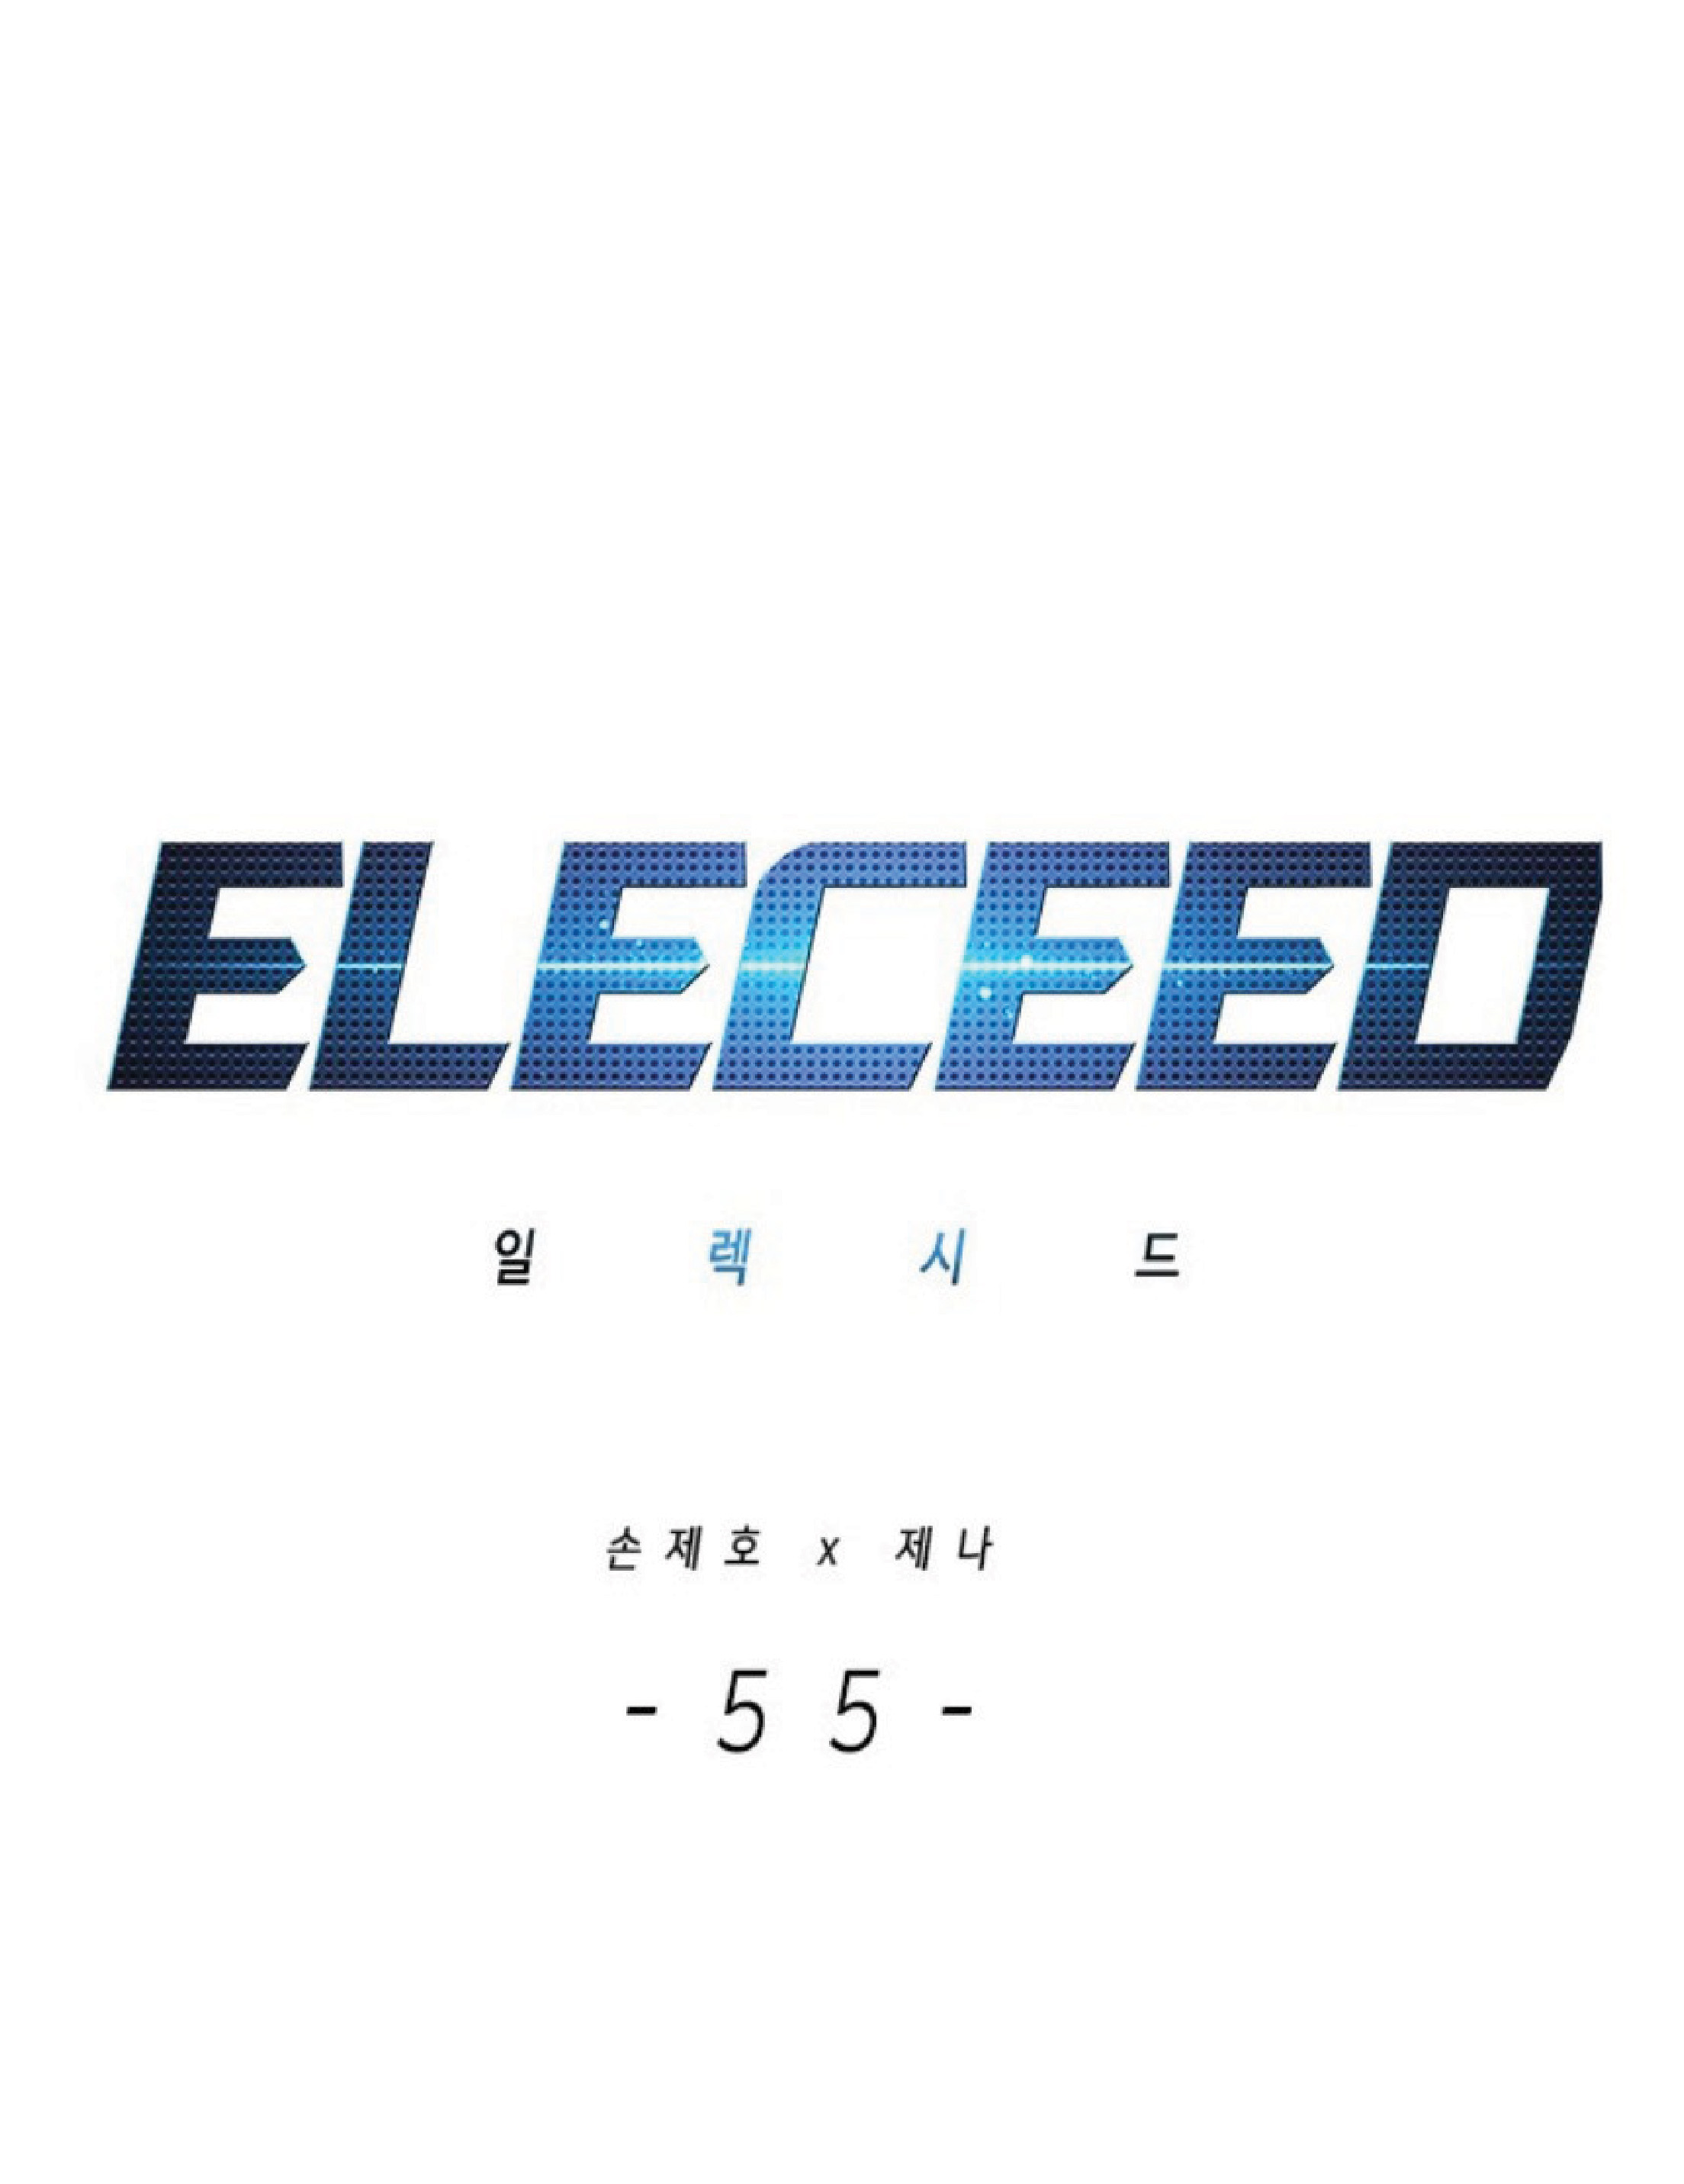 Eleceed 55 (1)